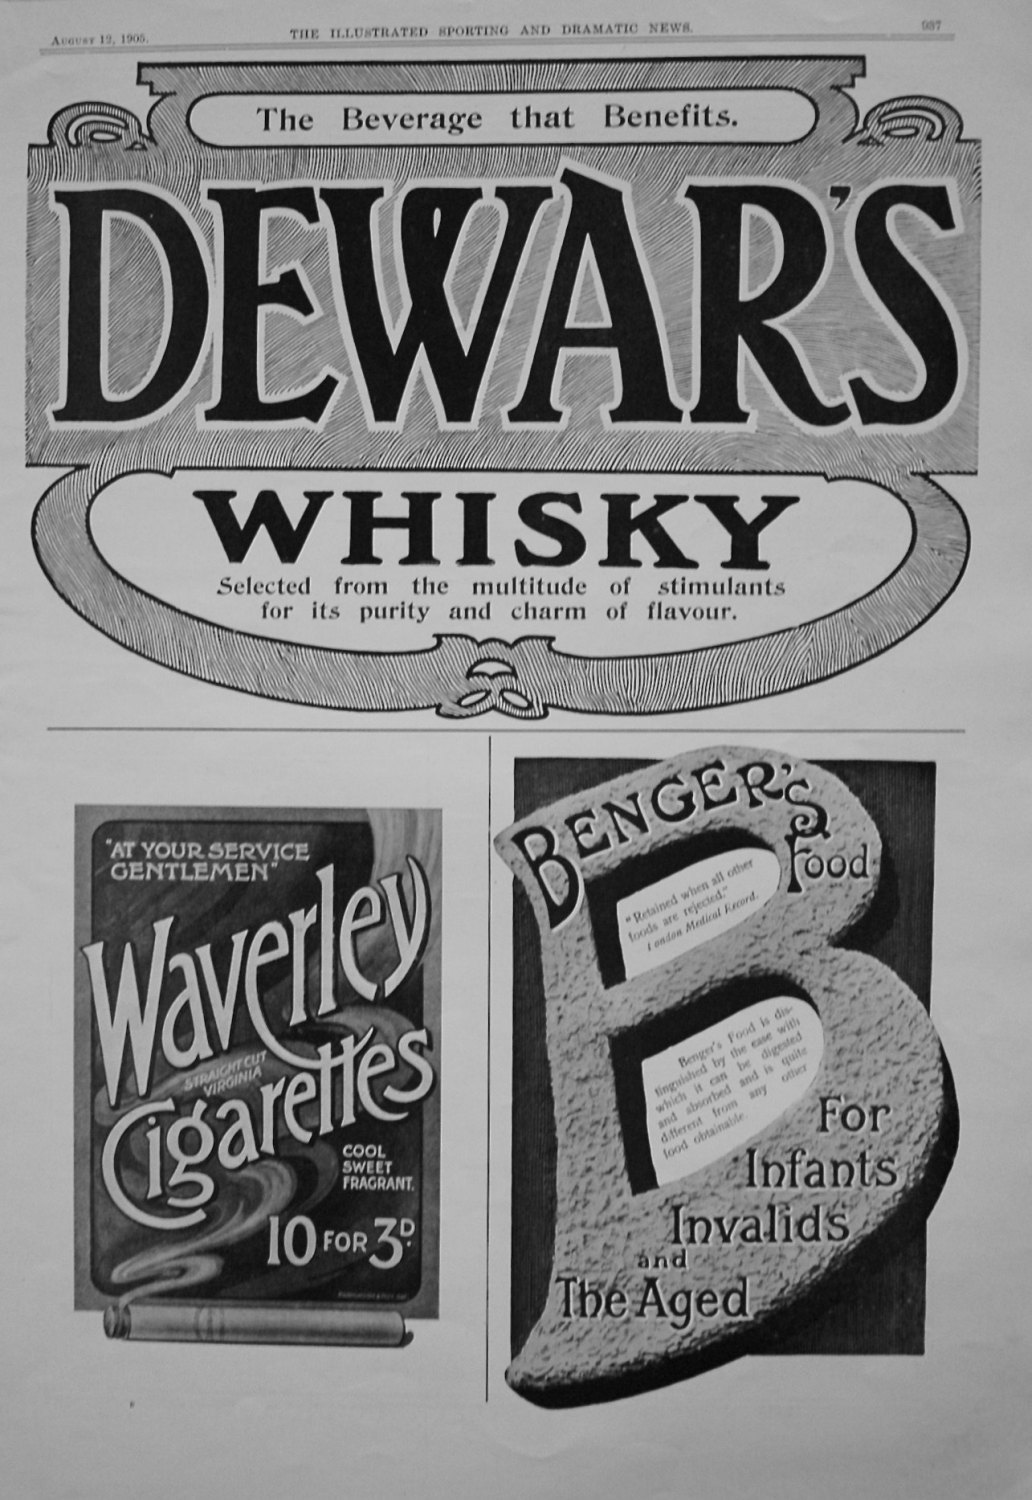 Dewar's Whisky. Waverley Cigarettes. Banger's Food. 1905.